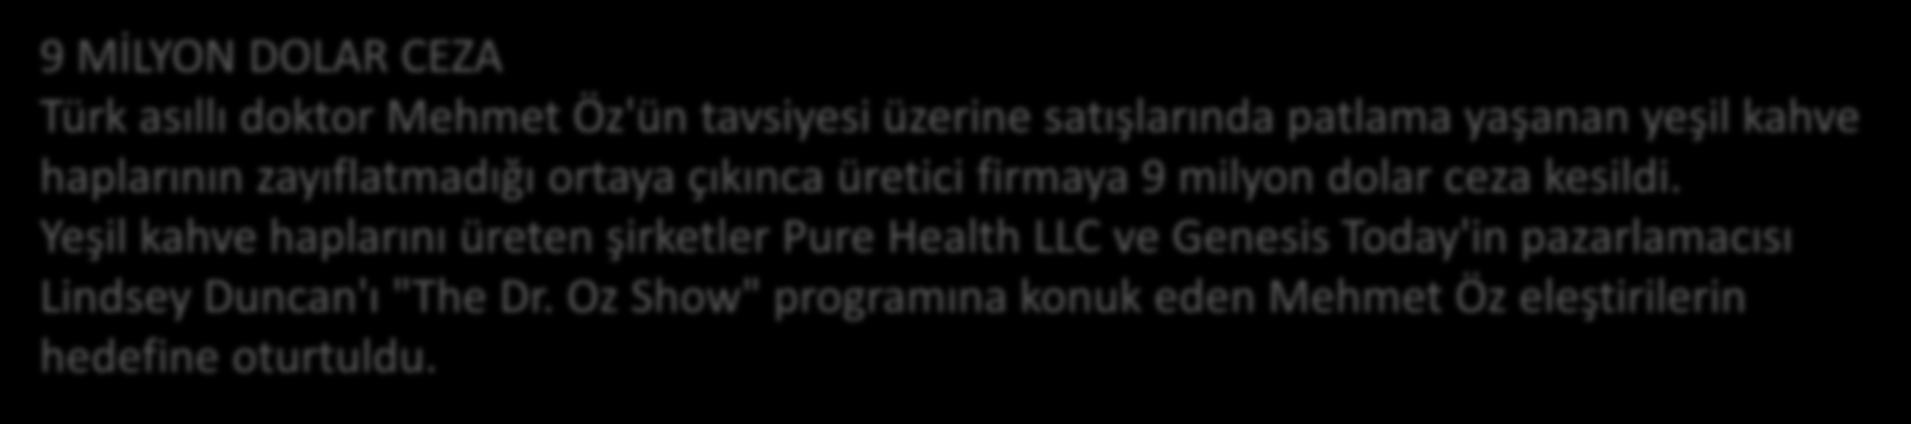 SENATO'DA İFADE VERMEK ZORUNDA KALDI ABD'li doktorlar tarafından kaleme alınan mektupta, Mehmet Öz'ün kendisinin sunduğu televizyon programında, çıkar amaçlı olarak diyet ilaçlarını övdüğü